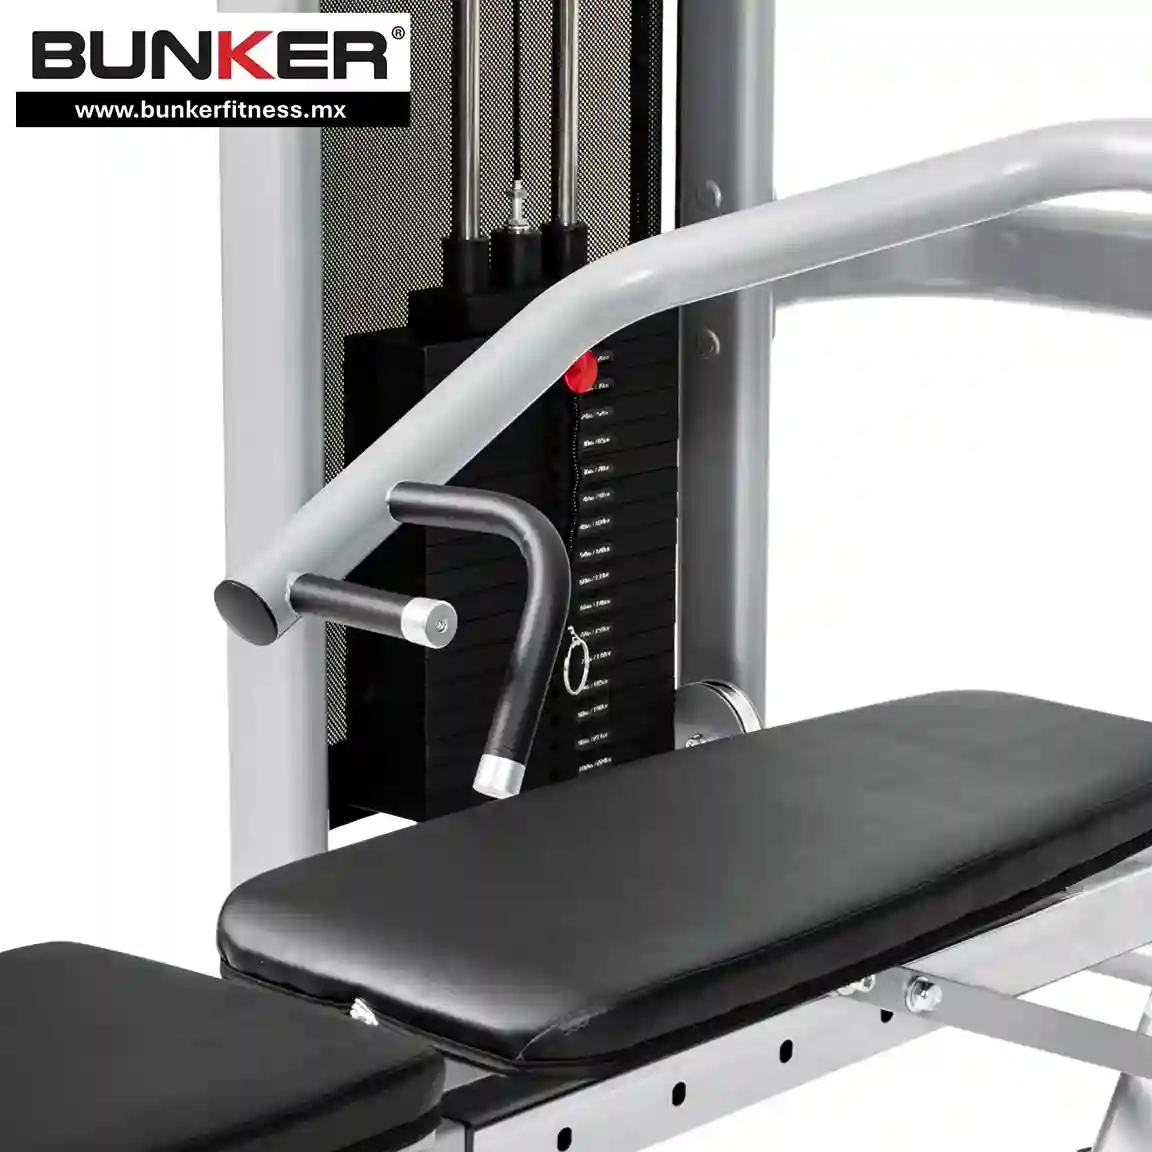 press de pecho y hombro dual multifuncional bunker fitness para ejercicio y gimnasio en casa bunker gym bunker fitness